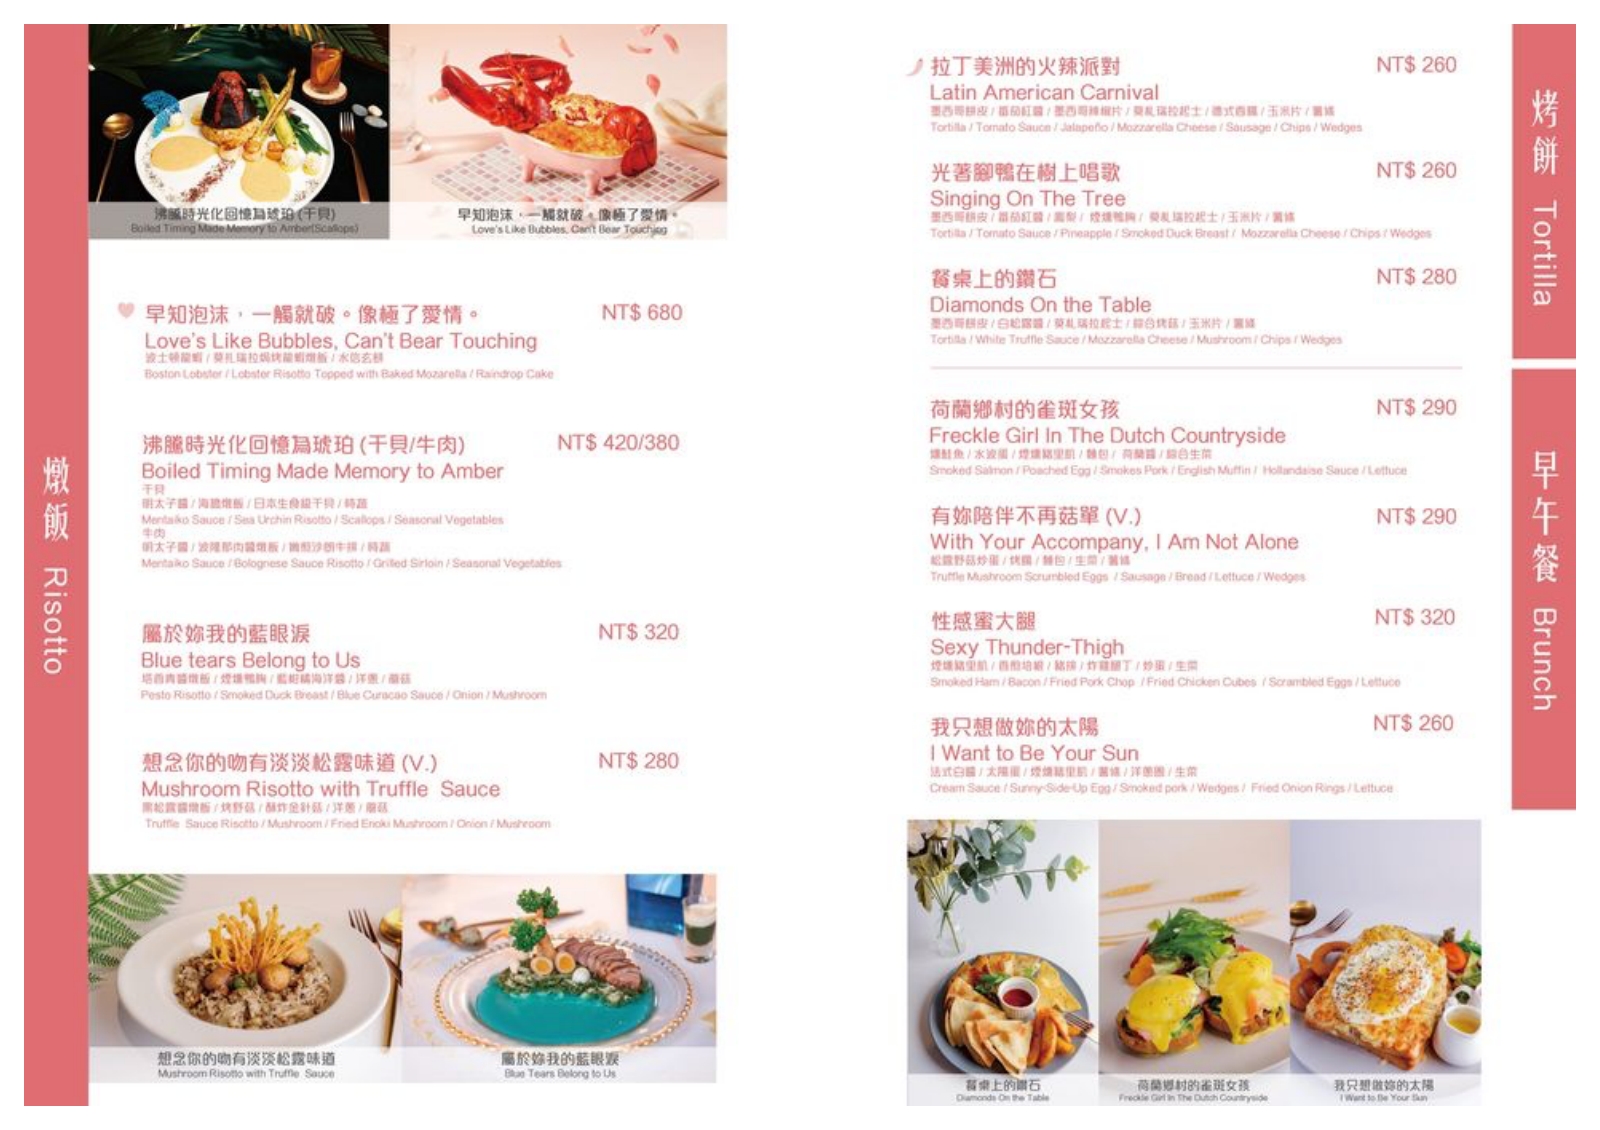 台北美食 BFF Gossip Brunch 華麗系餐點 公館早午餐推薦